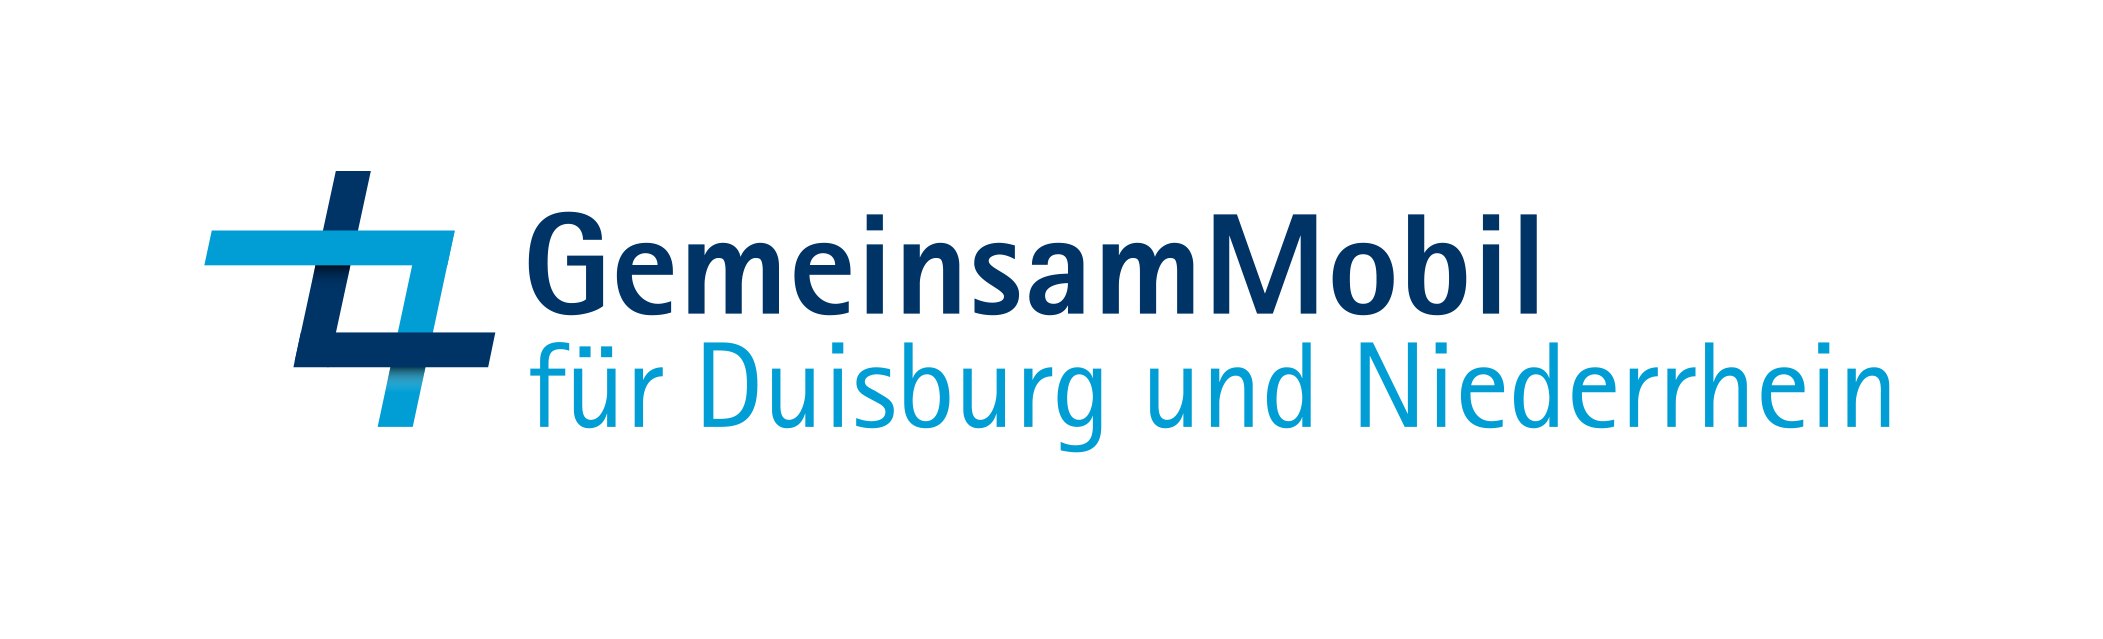 GM fuer Duisburg und Niederrhein Logo